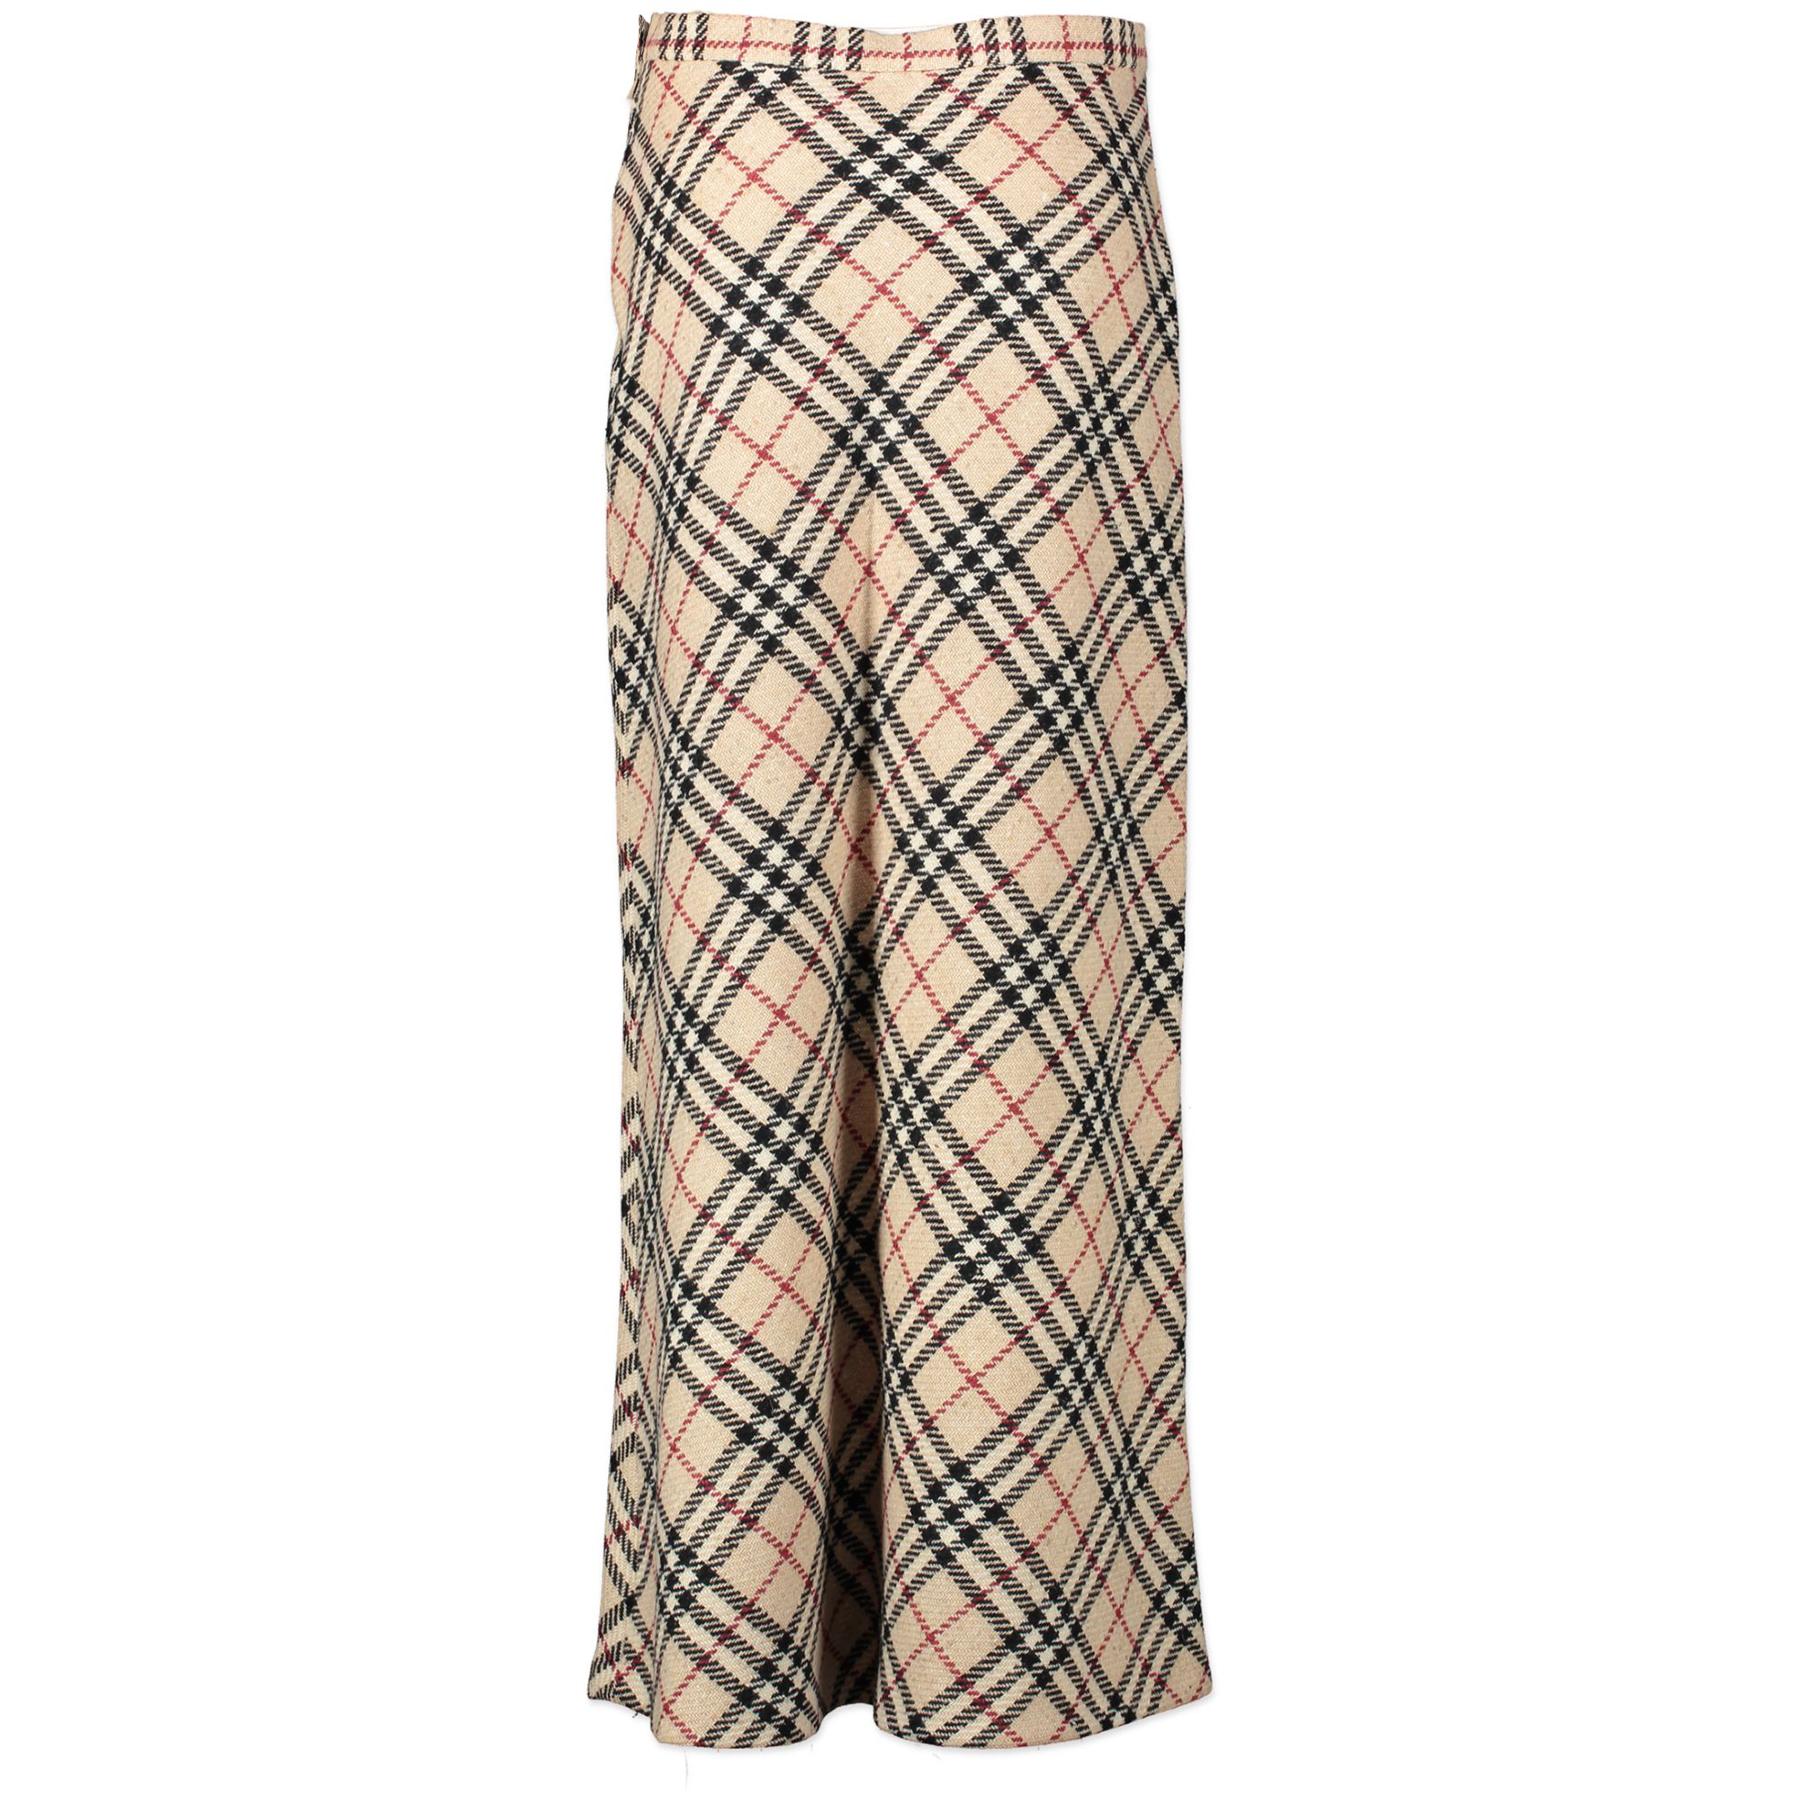 Procurez-vous cette jupe longue et élégante de Burberry. Il est confectionné en 100% laine et présente un motif écossais. Sortez avec style avec cette jupe intemporelle !